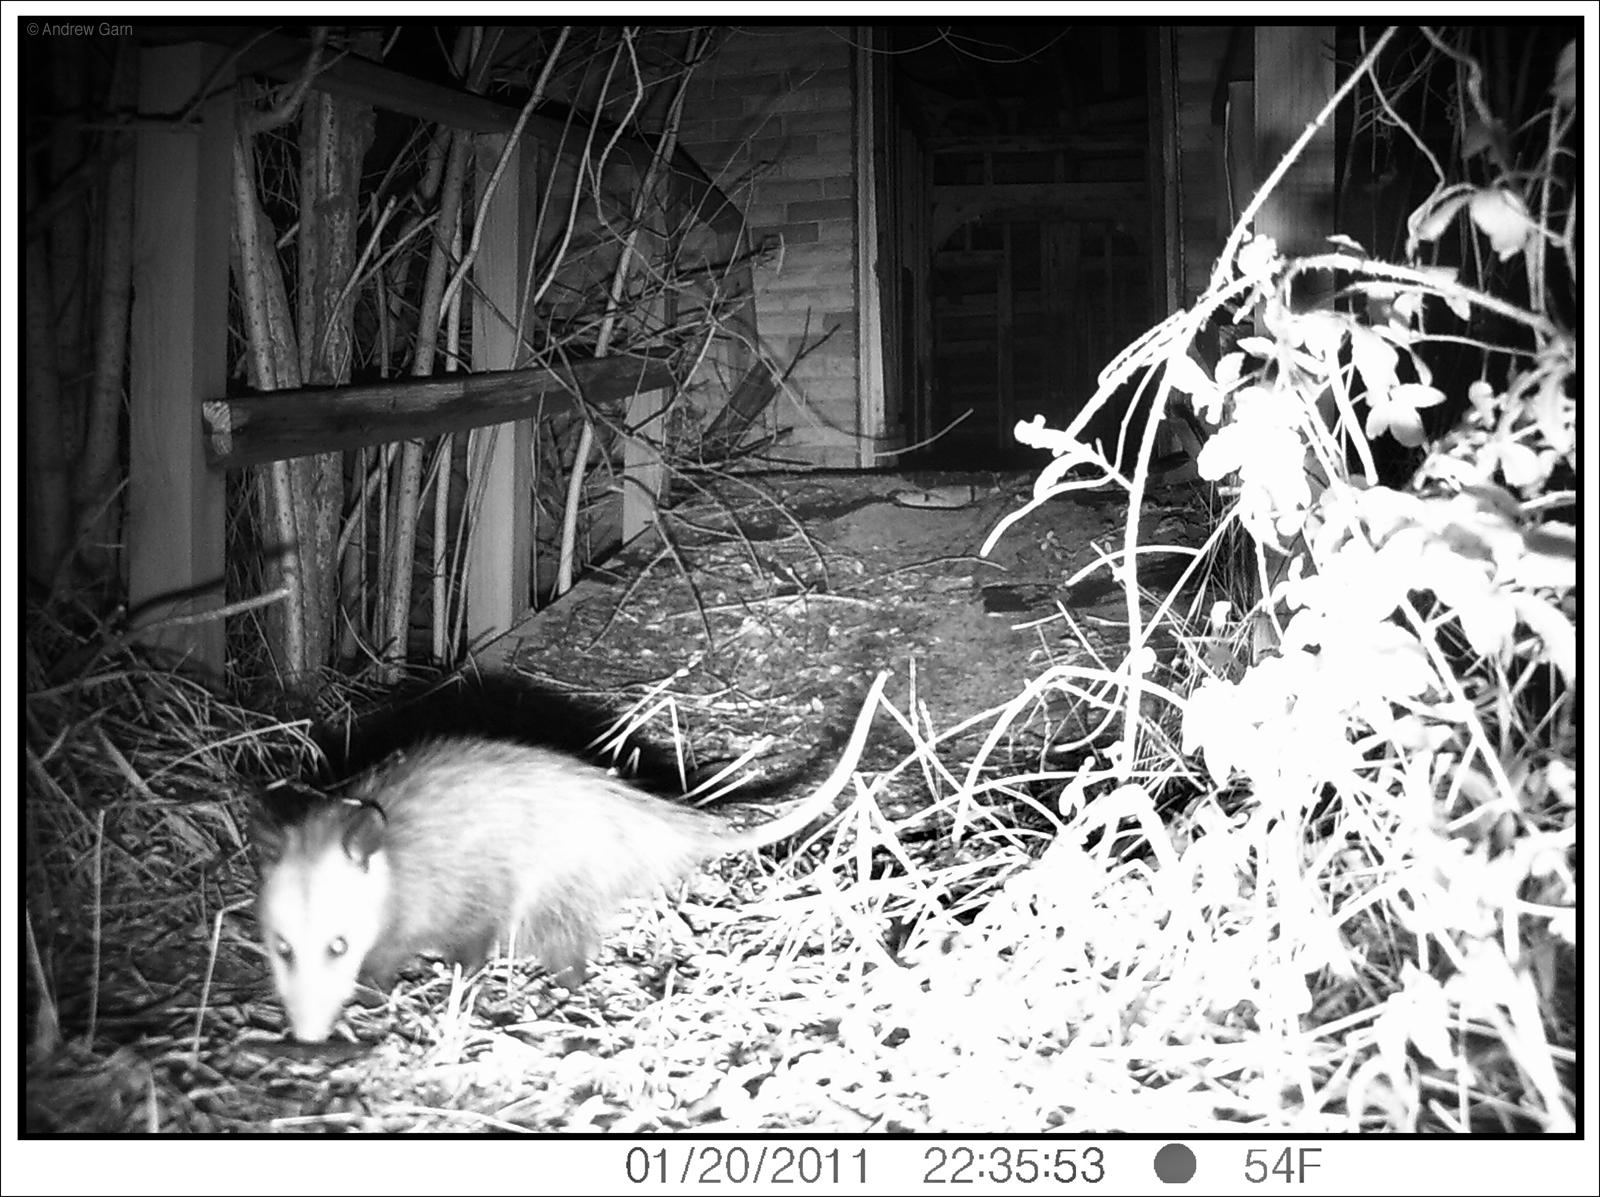 Possum, 4705 N. Tonti St., January 20, 2011, 10:35:55, 54f